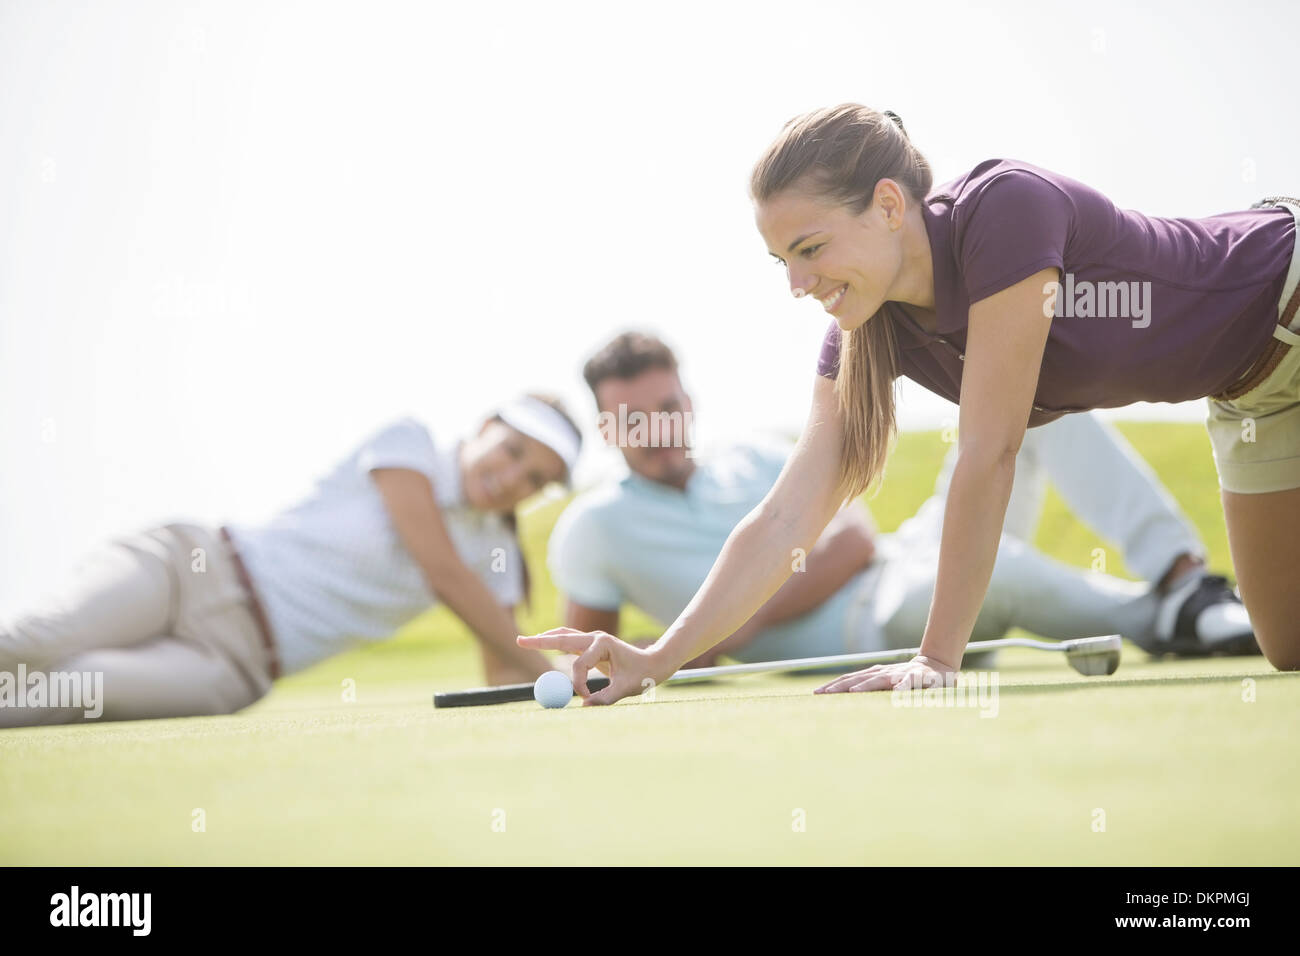 Gli amici a guardare la donna sfiora la pallina da golf verso il foro Foto Stock